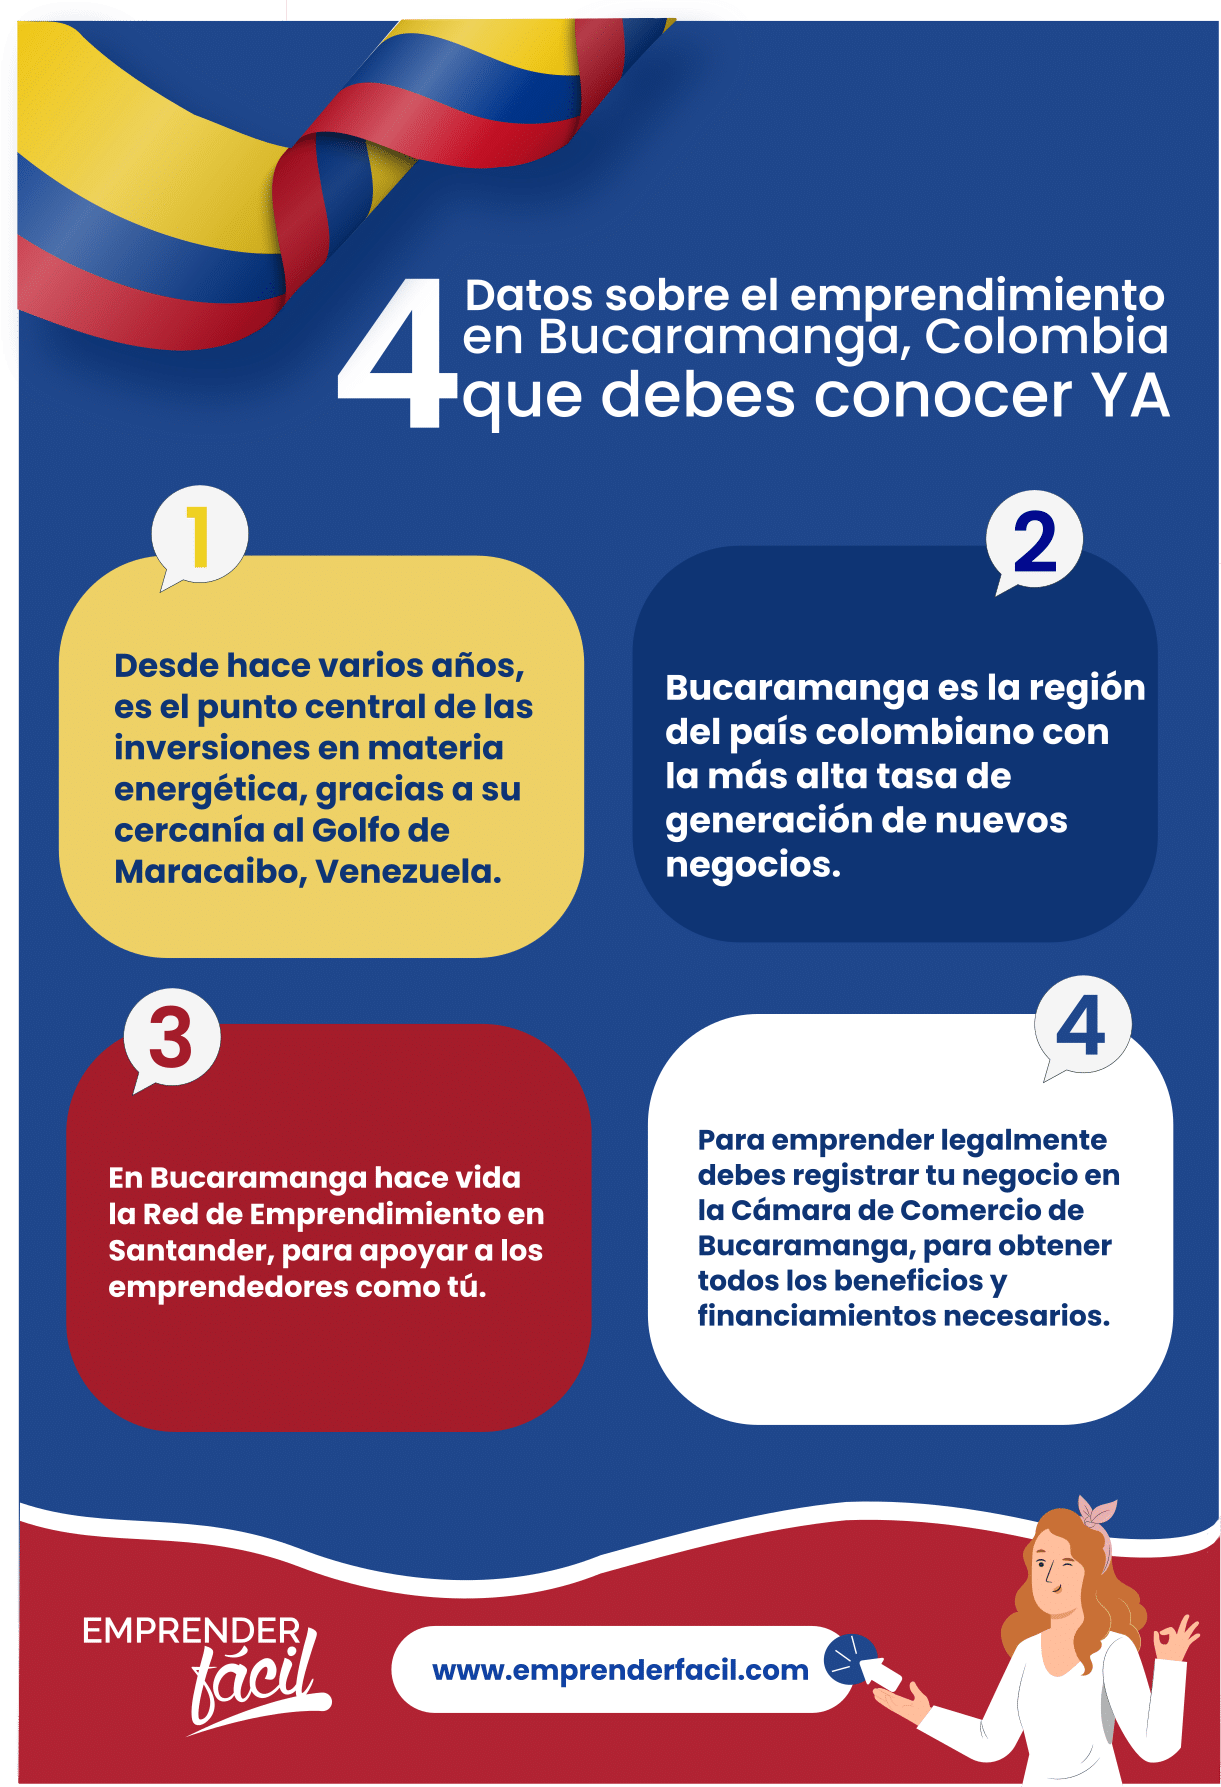 Datos sobre los negocios rentables en Bucaramaga, Colombia.